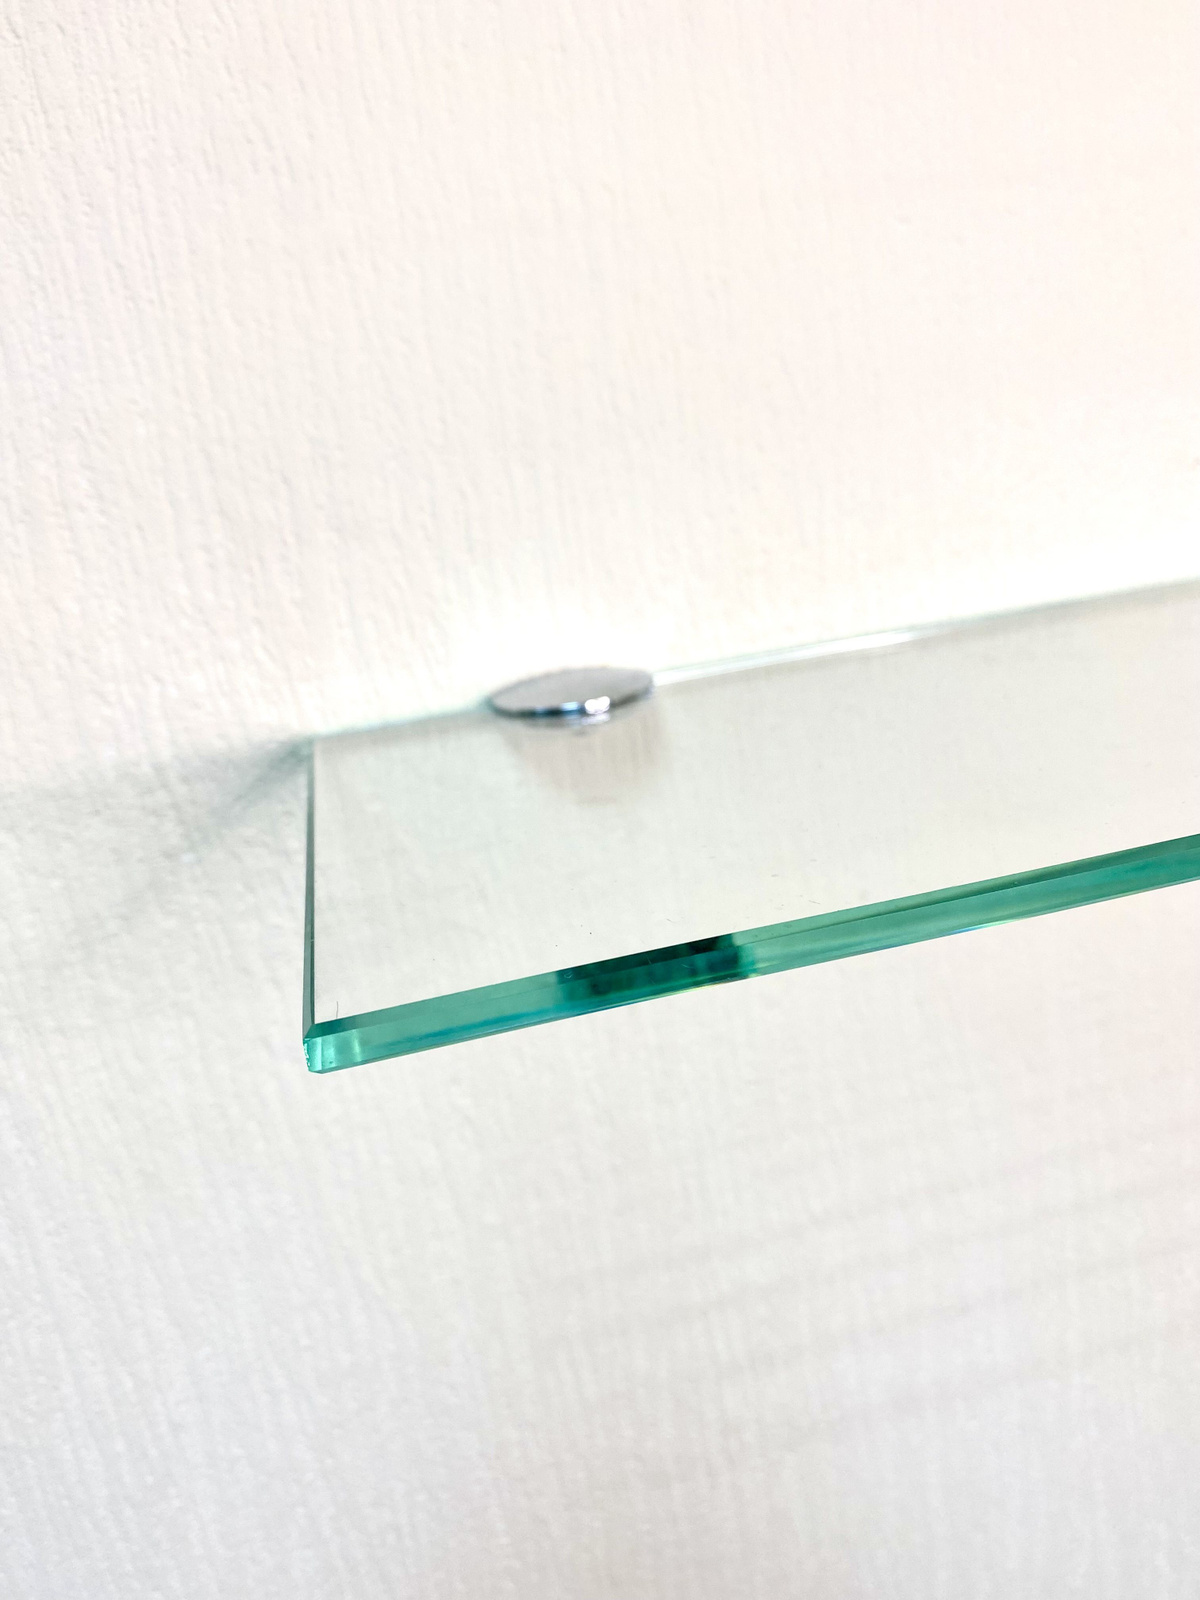 Кромка стекла отполирована, что делает край стекла глянцевым.